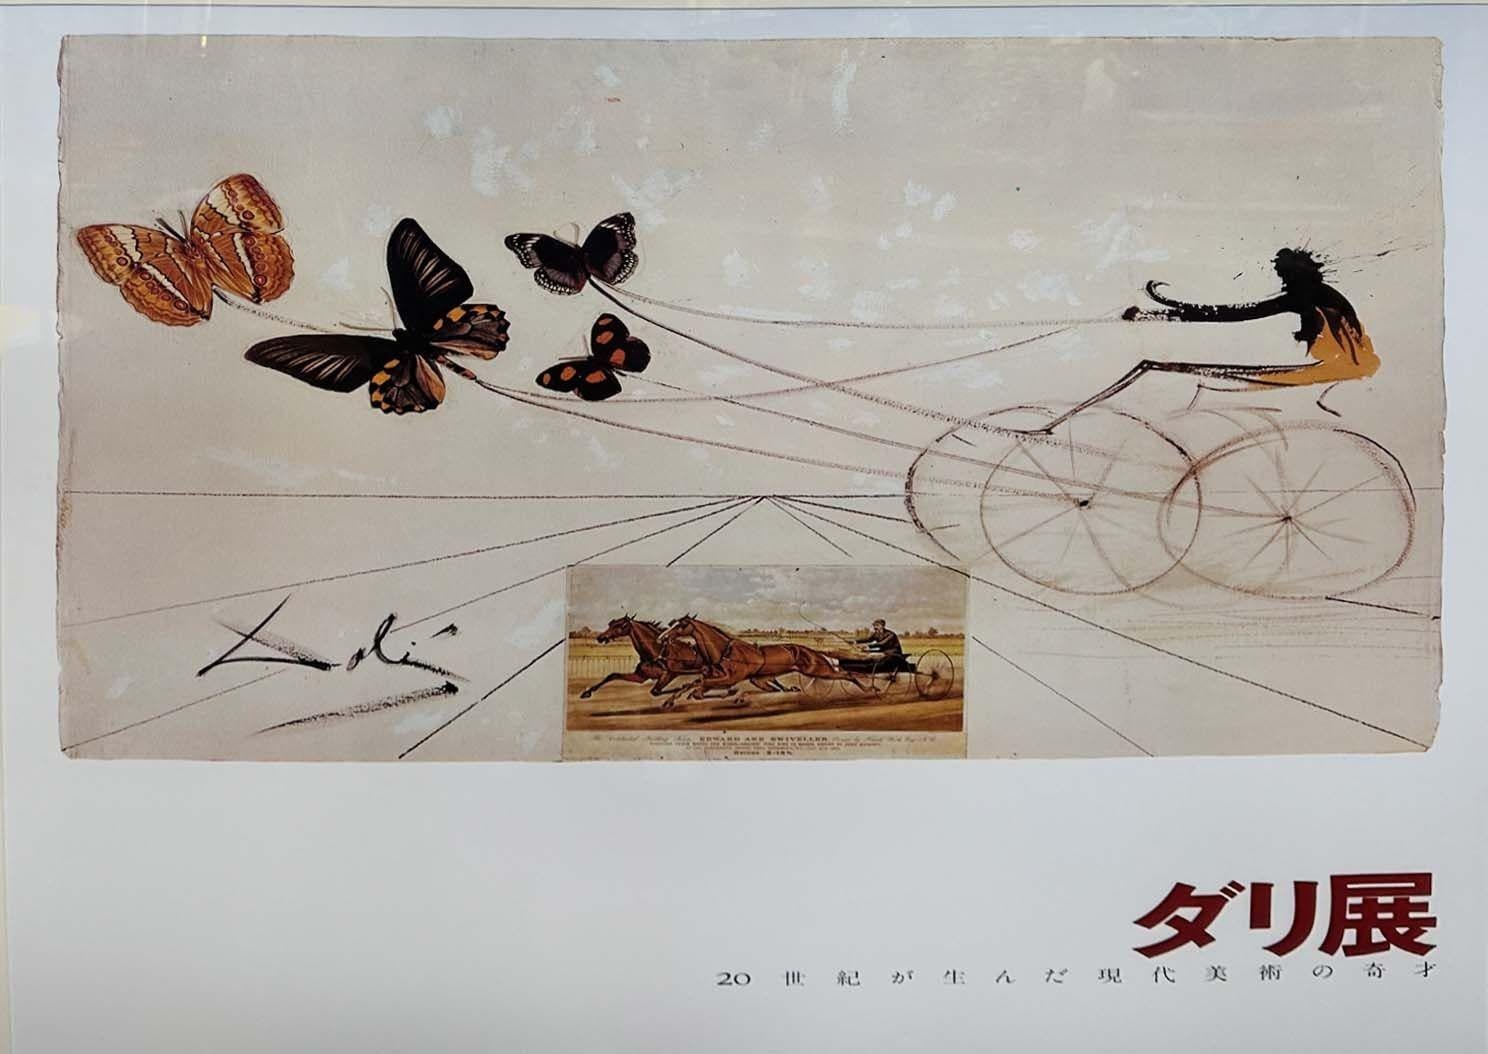 Dieses bezaubernde lithografische Plakat ist ein Kunstwerk für die 1974 in Tokio stattfindende Ausstellung 